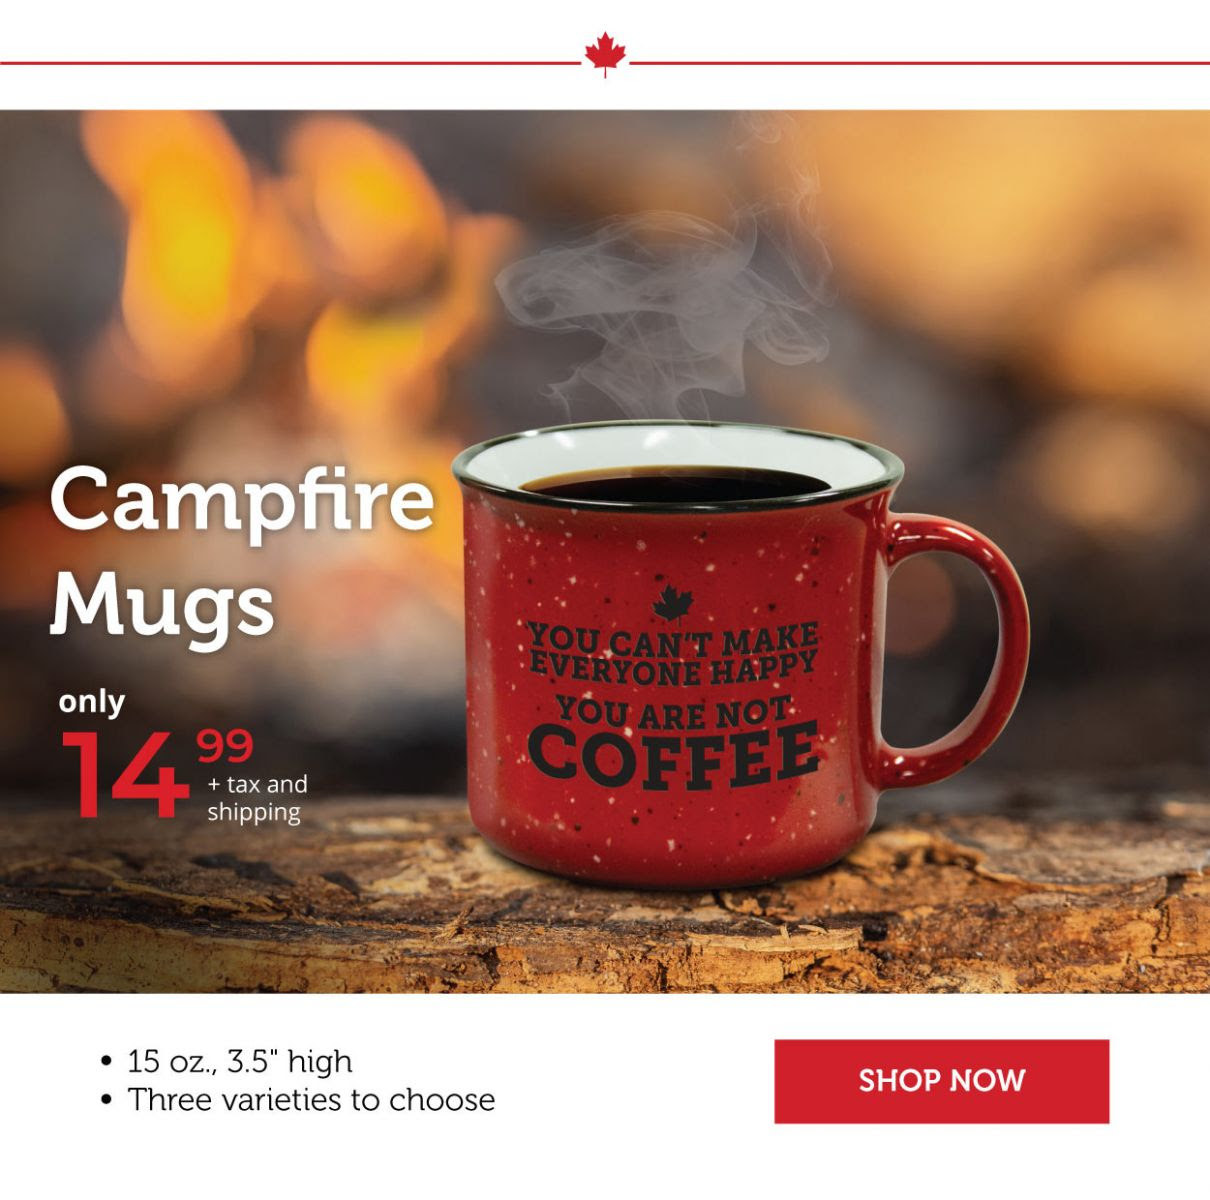 Campfire mugs!